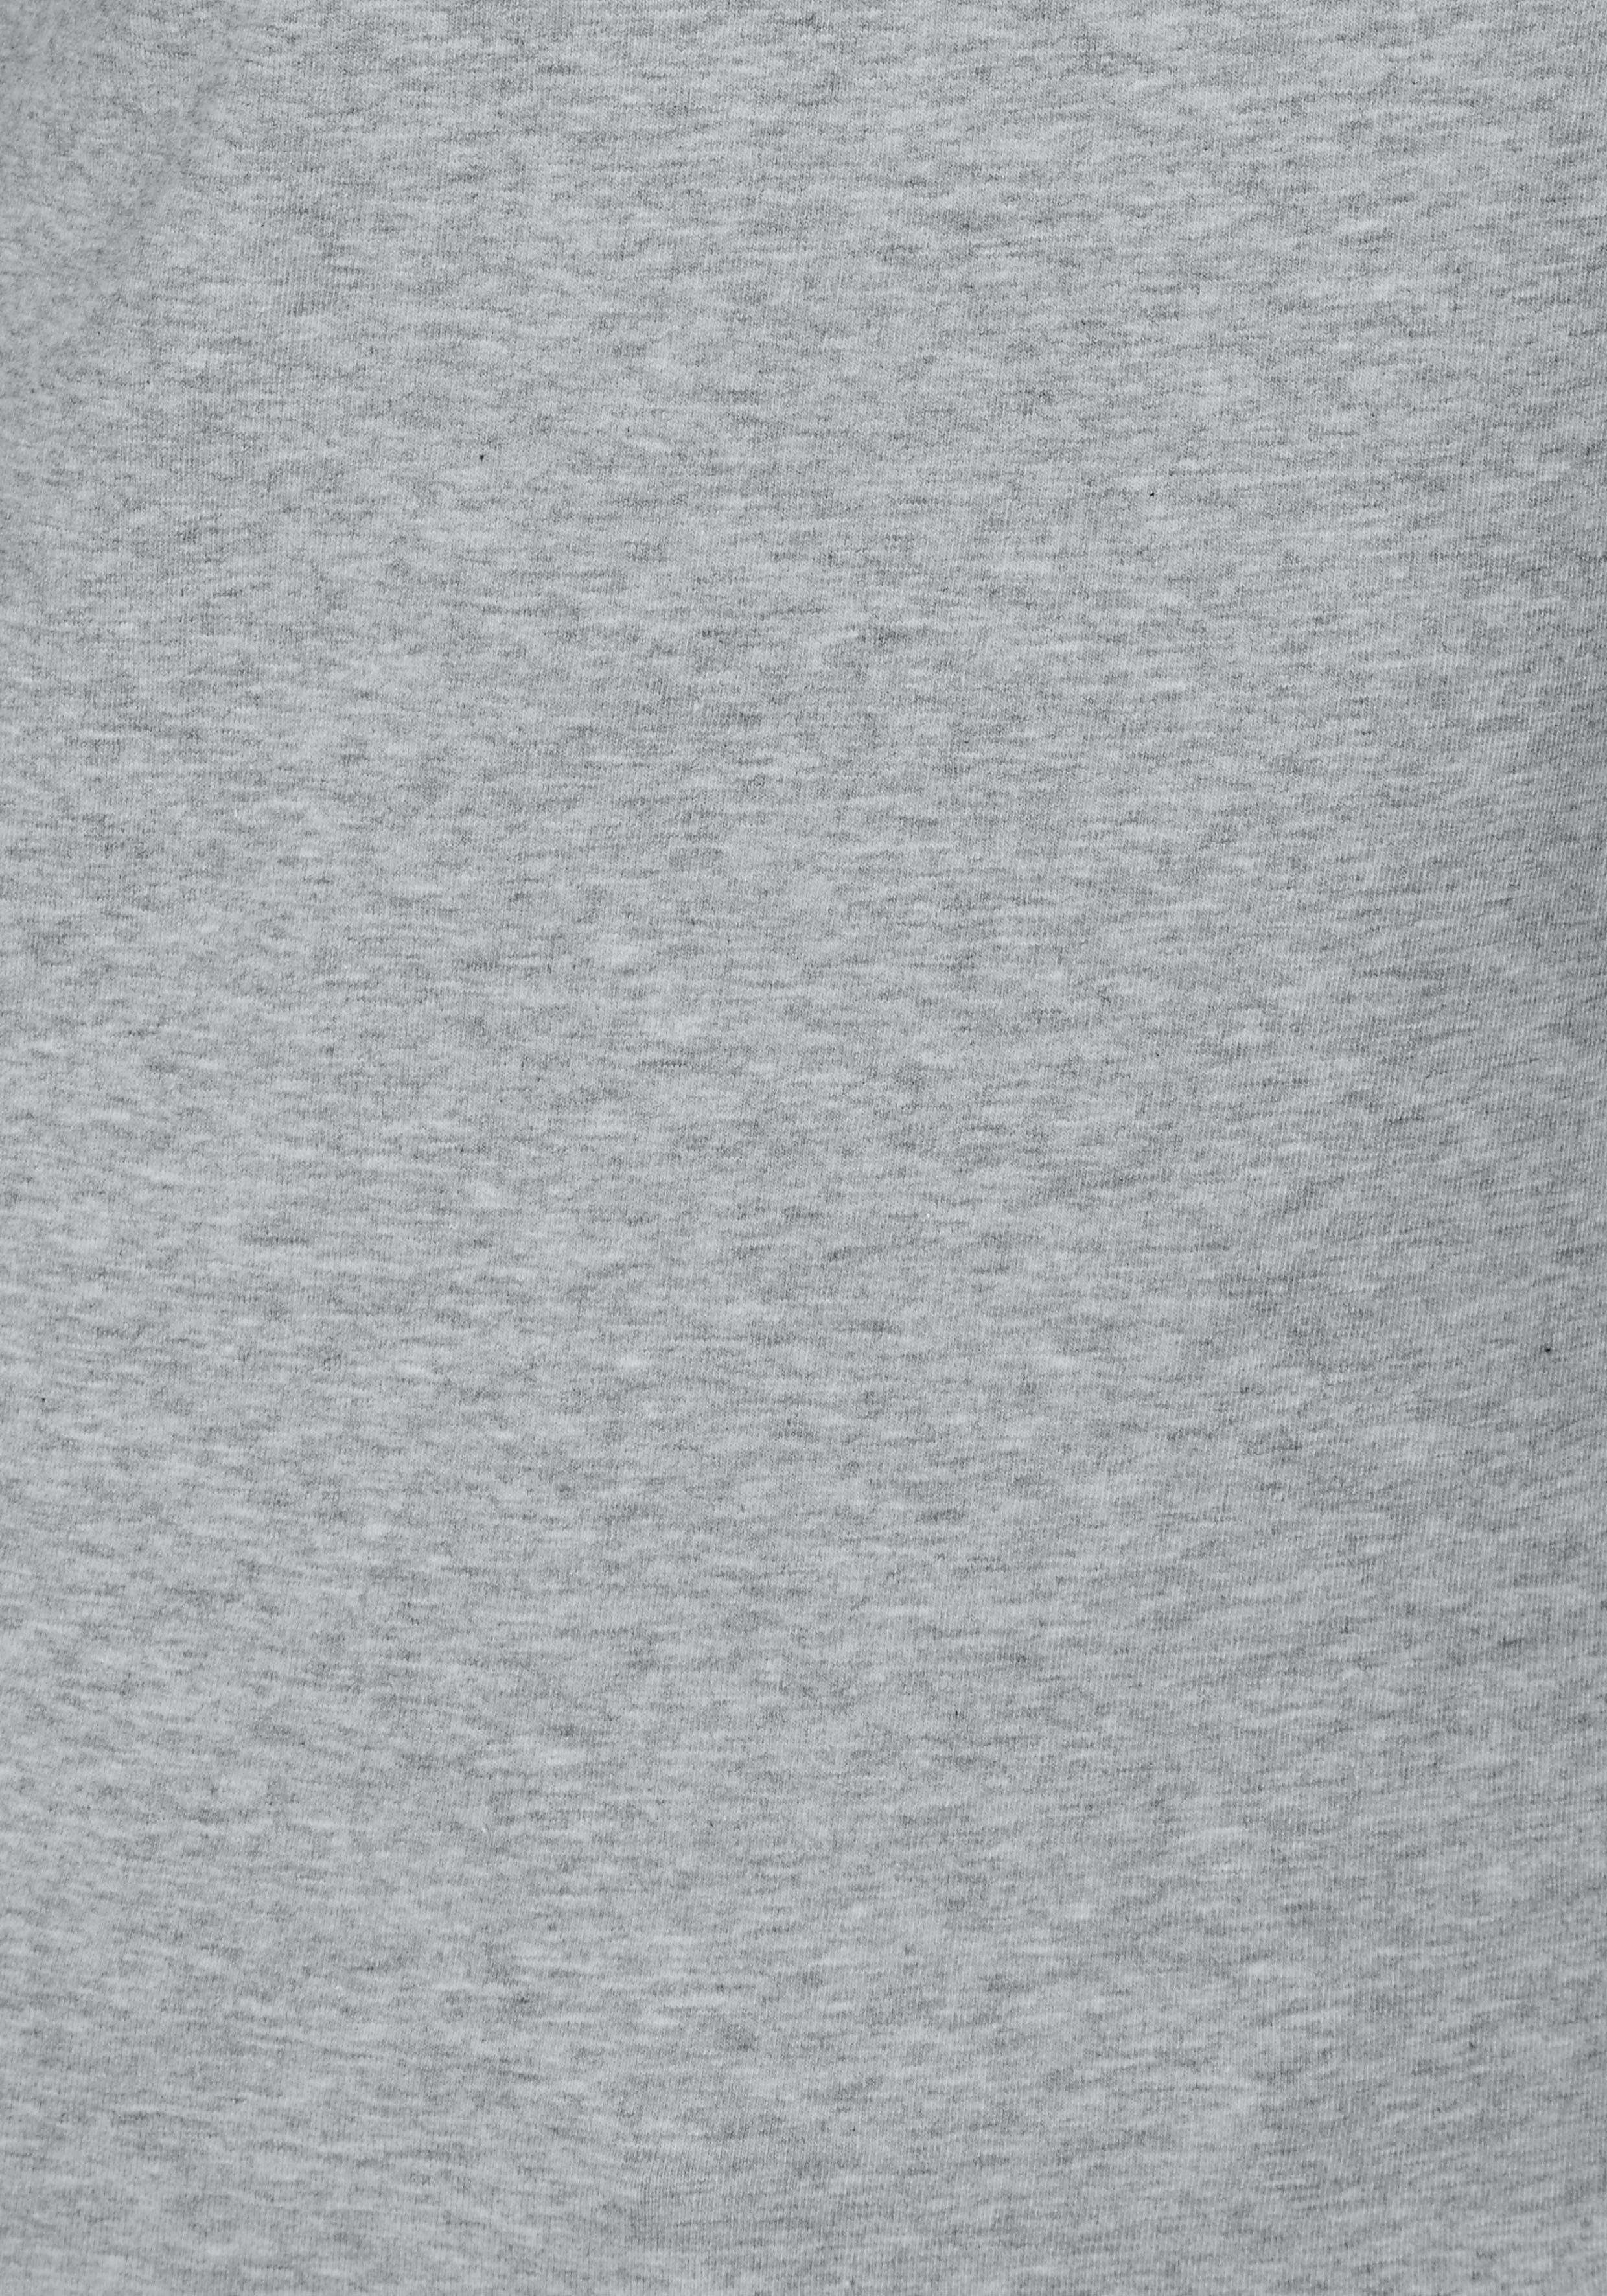 (2er-Pack) elastischer Langarmshirt aus Baumwoll-Qualität Vivance schwarz grau-meliert,